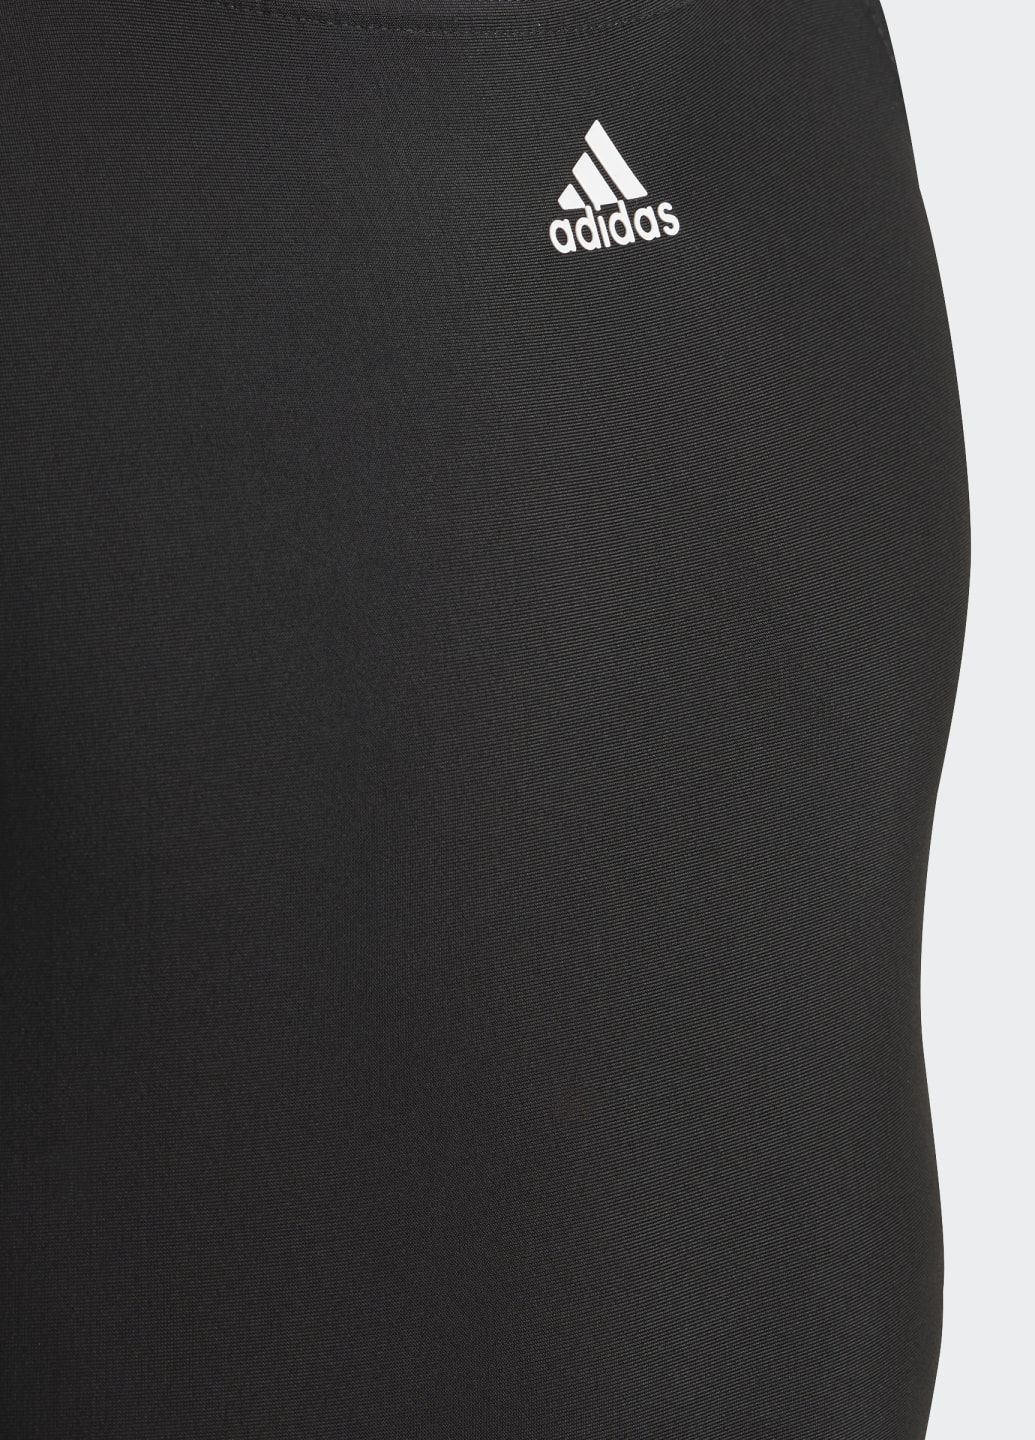 Чорний літній суцільний купальник 3-stripes adidas